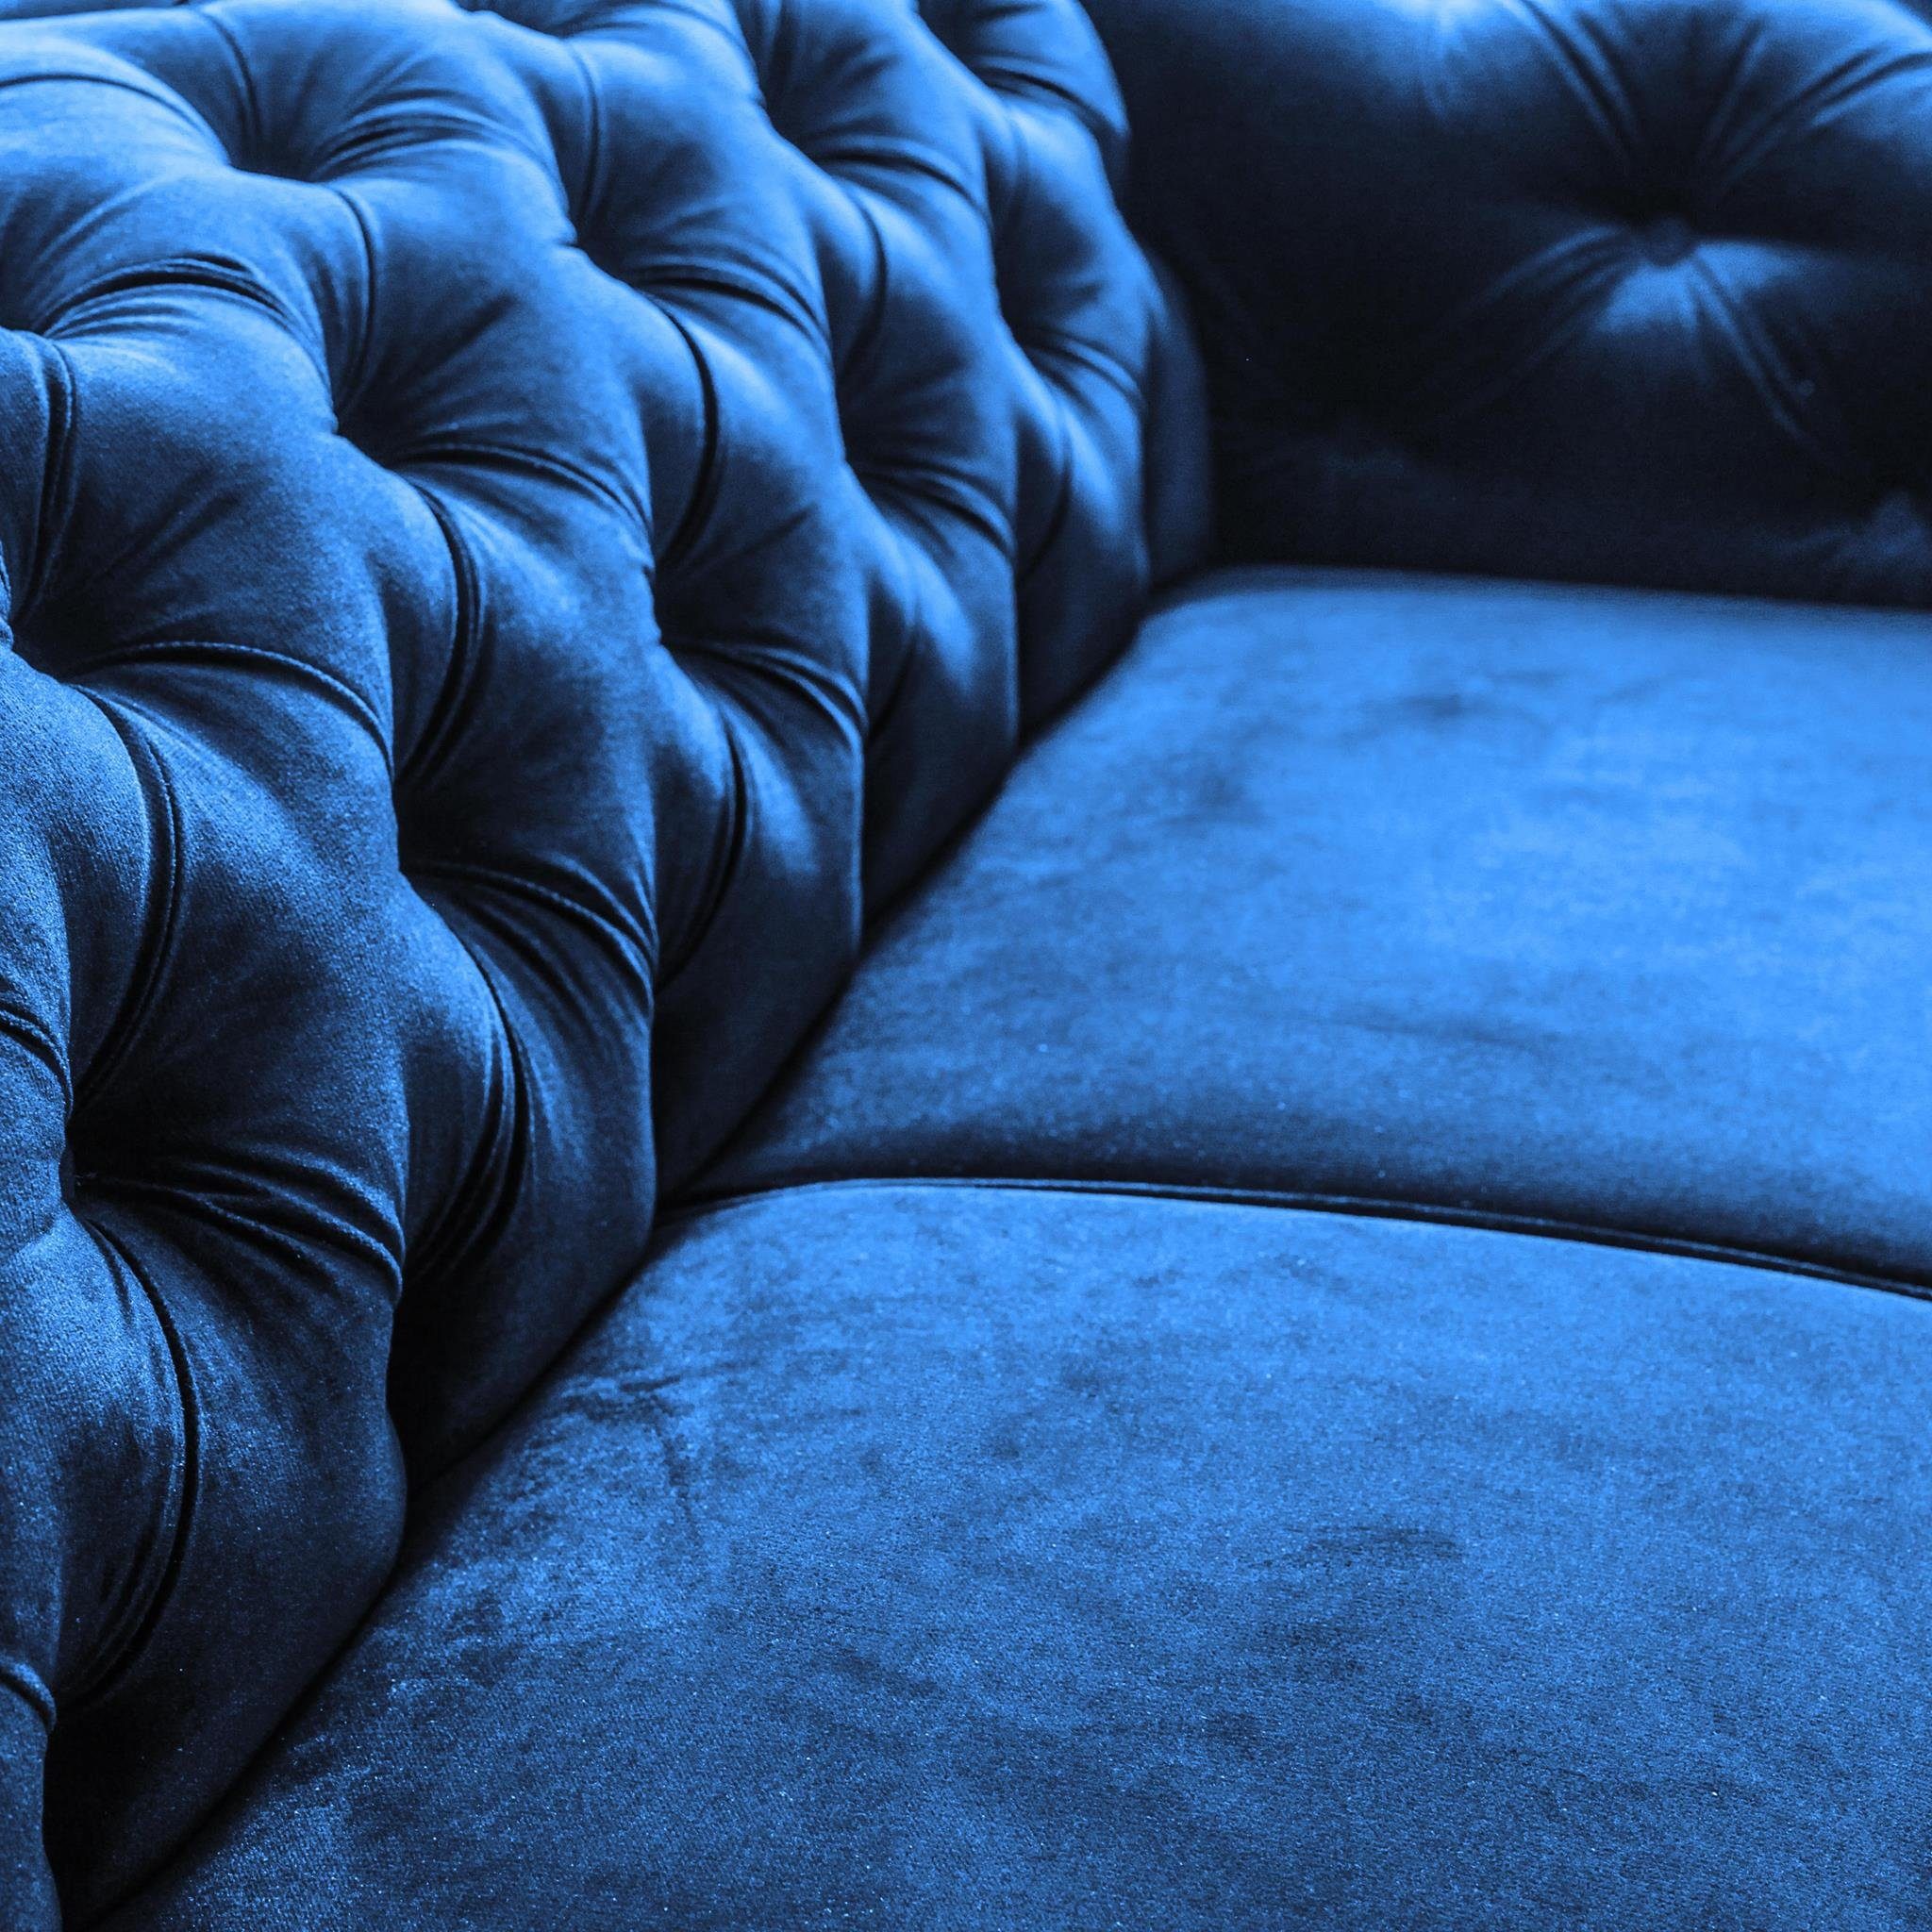 Sofa 3-Sitzer Marineblau Polstergarnitur (Sessel inkl. + Stil Chesterfield Sofa (kronos + Wellenunterfederung im Beautysofa Steppung), 2-Sitzer mit Chester, 09) Couchgarnitur